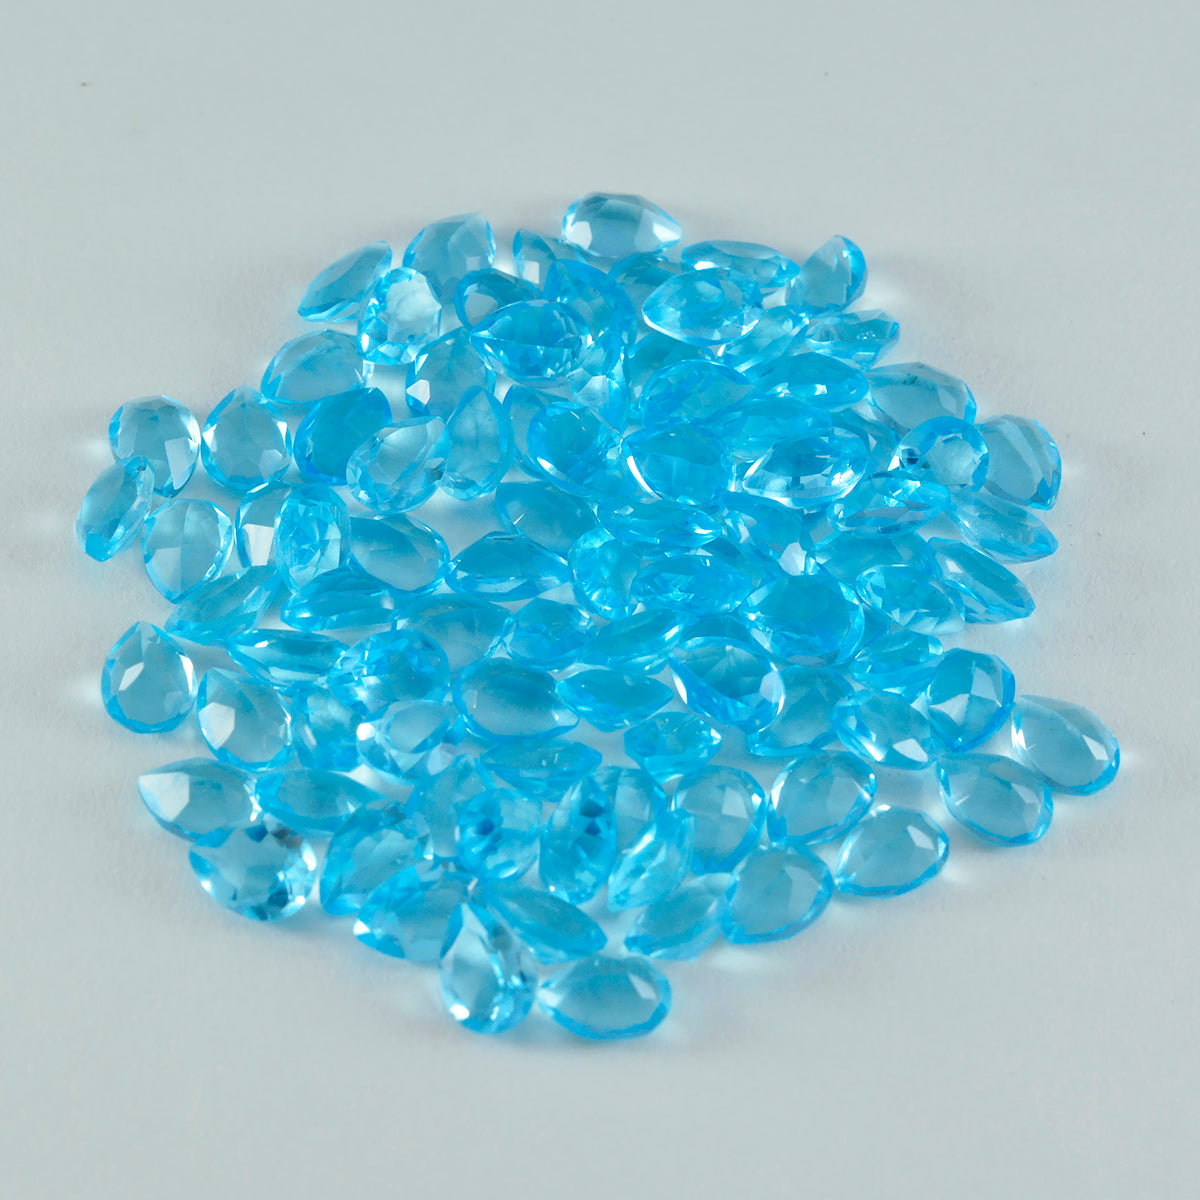 Riyogems 1PC Blue Topaz CZ Faceted 3x5 mm Pear Shape excellent Quality Gems